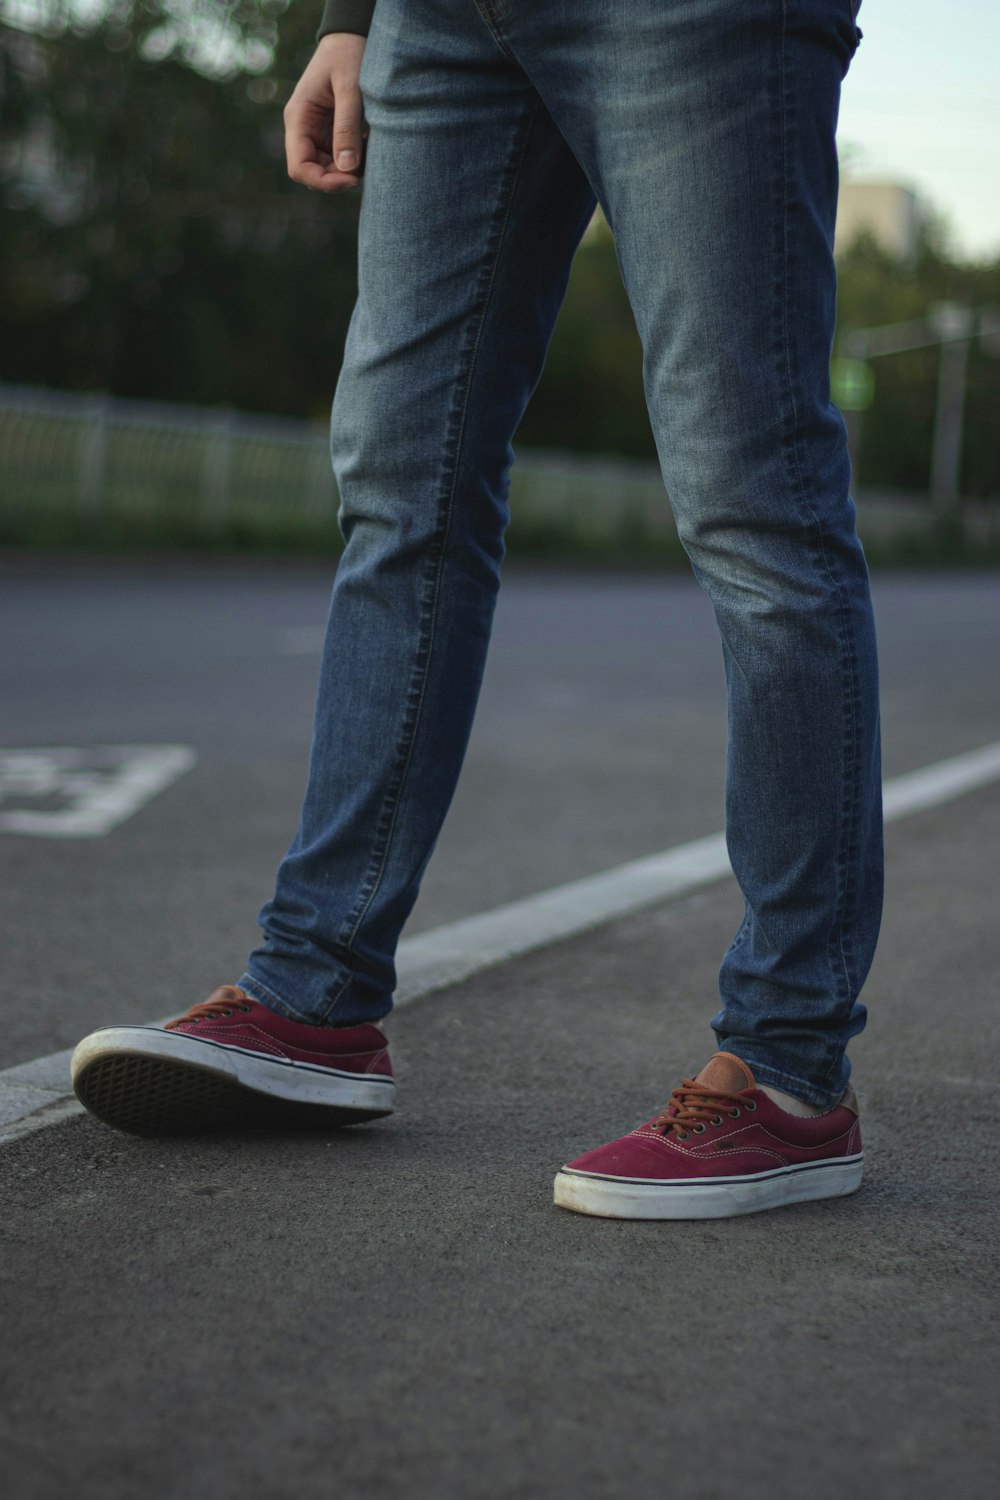 segundo encanto Molestar Foto persona con jeans azules y zapatillas nike rojas – Imagen Furgonetas  gratis en Unsplash